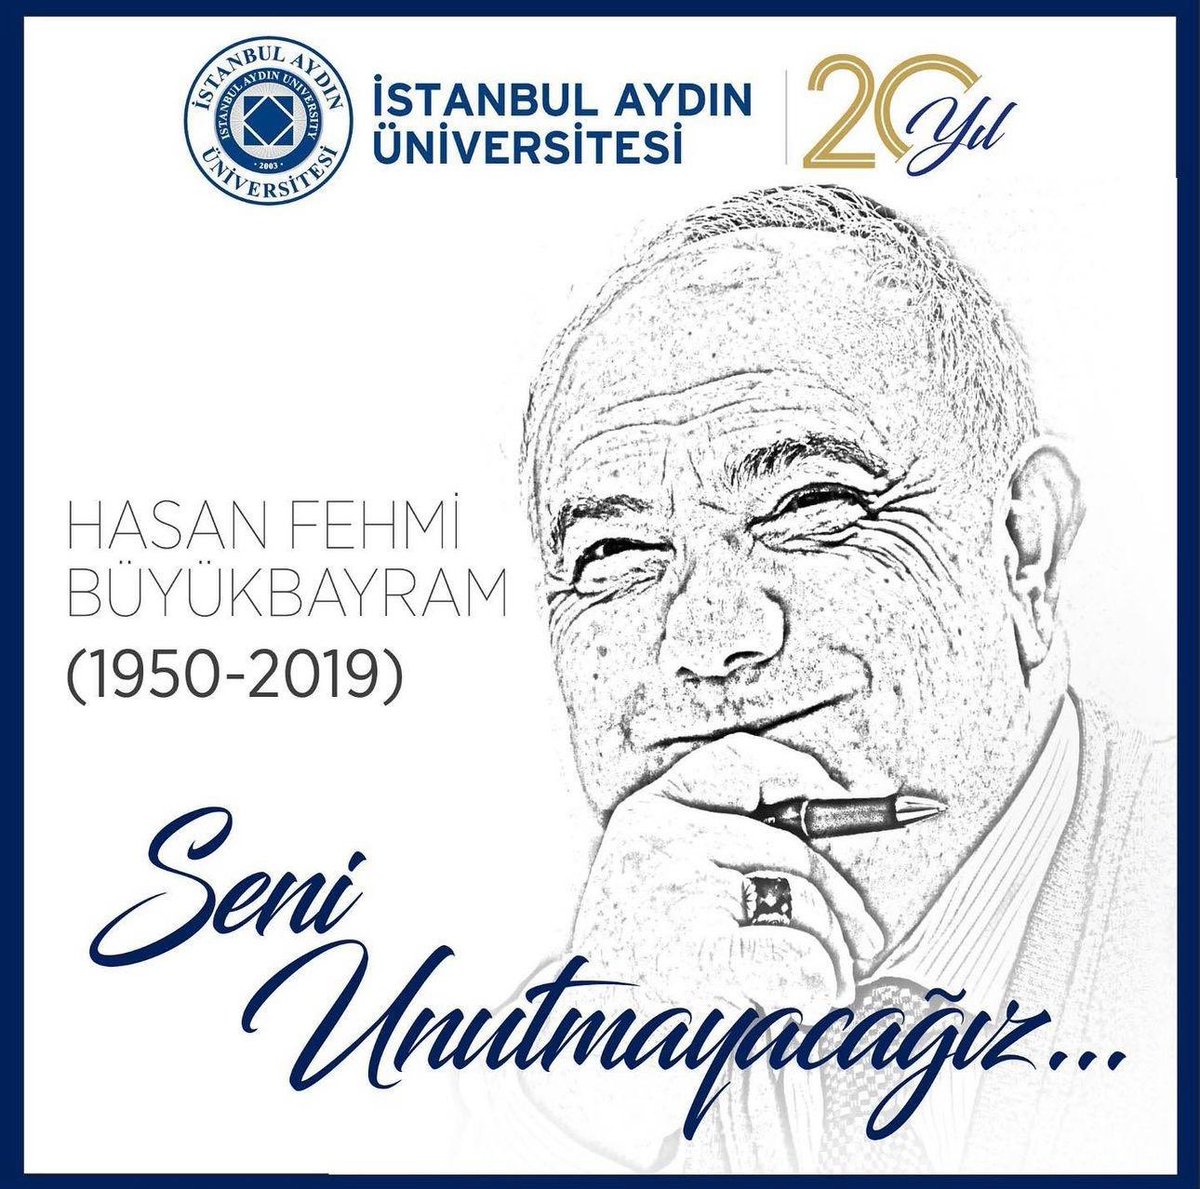 2006-2019 yılları arasında üniversitemiz Genel Sekreterlik görevini yürüten ve 2019 yılında aramızdan ayrılan Emekli Tuğgeneral Hasan Fehmi Büyükbayram. 
Sizi unutmadık, unutmayacağız.